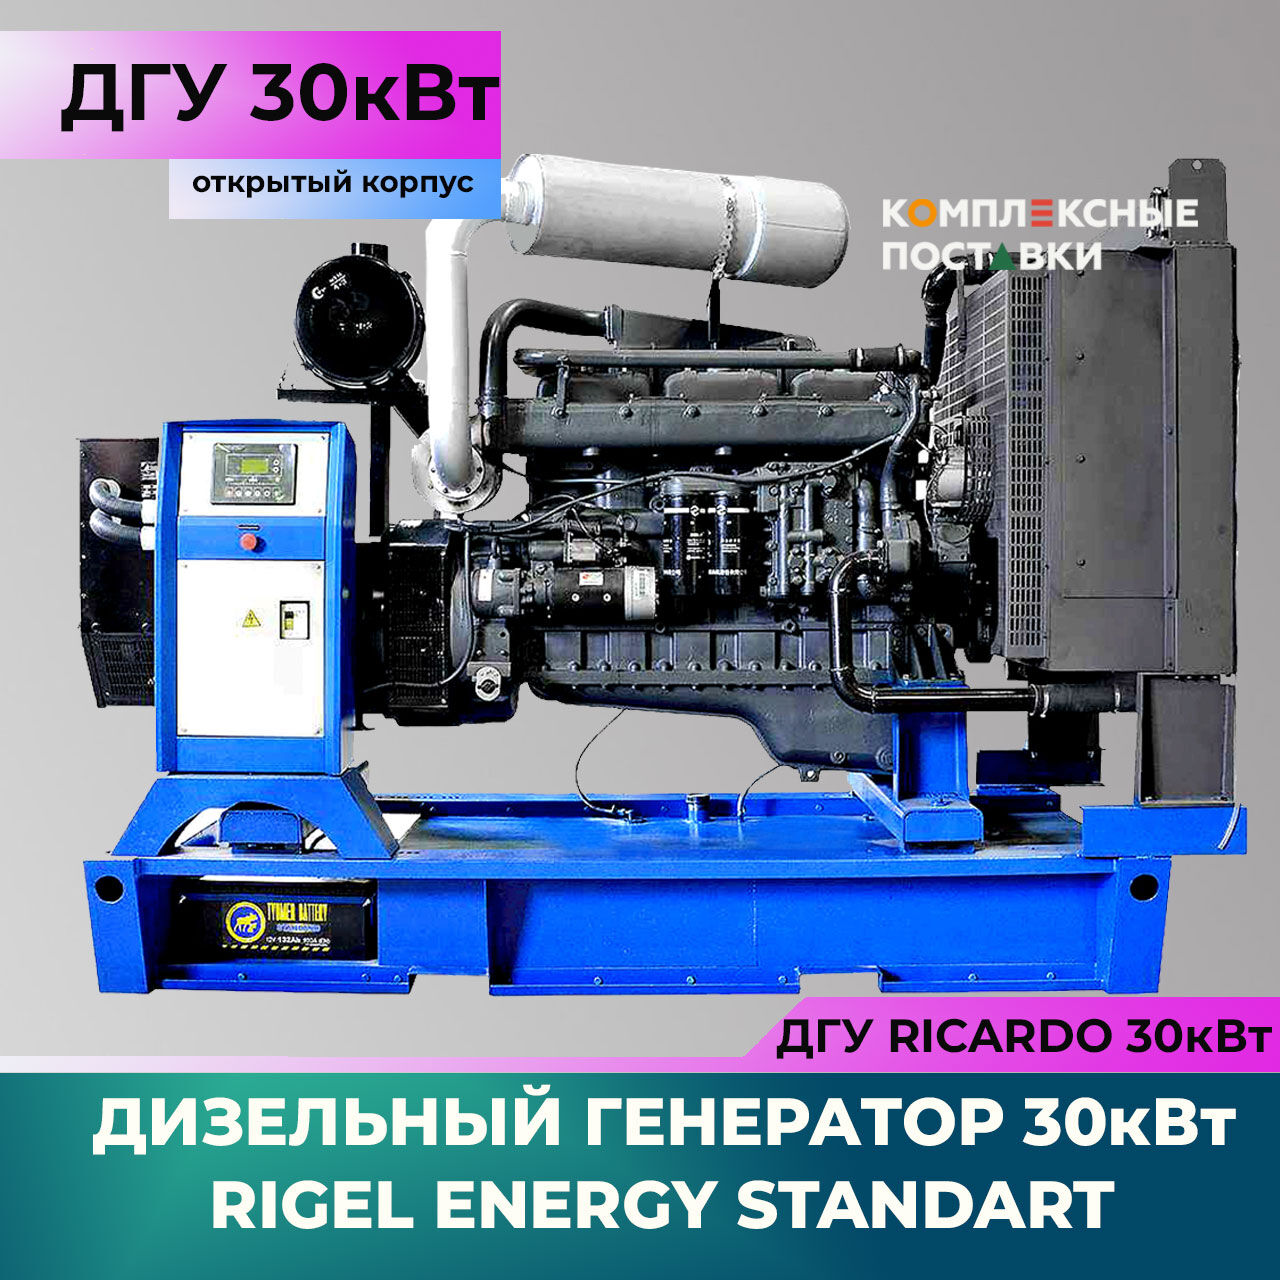 ДГУ 30 кВт Ricardo R Дизельный генератор Rigel Energy Standard RES 30 (30 кВт, Ricardo R) открытый корпус